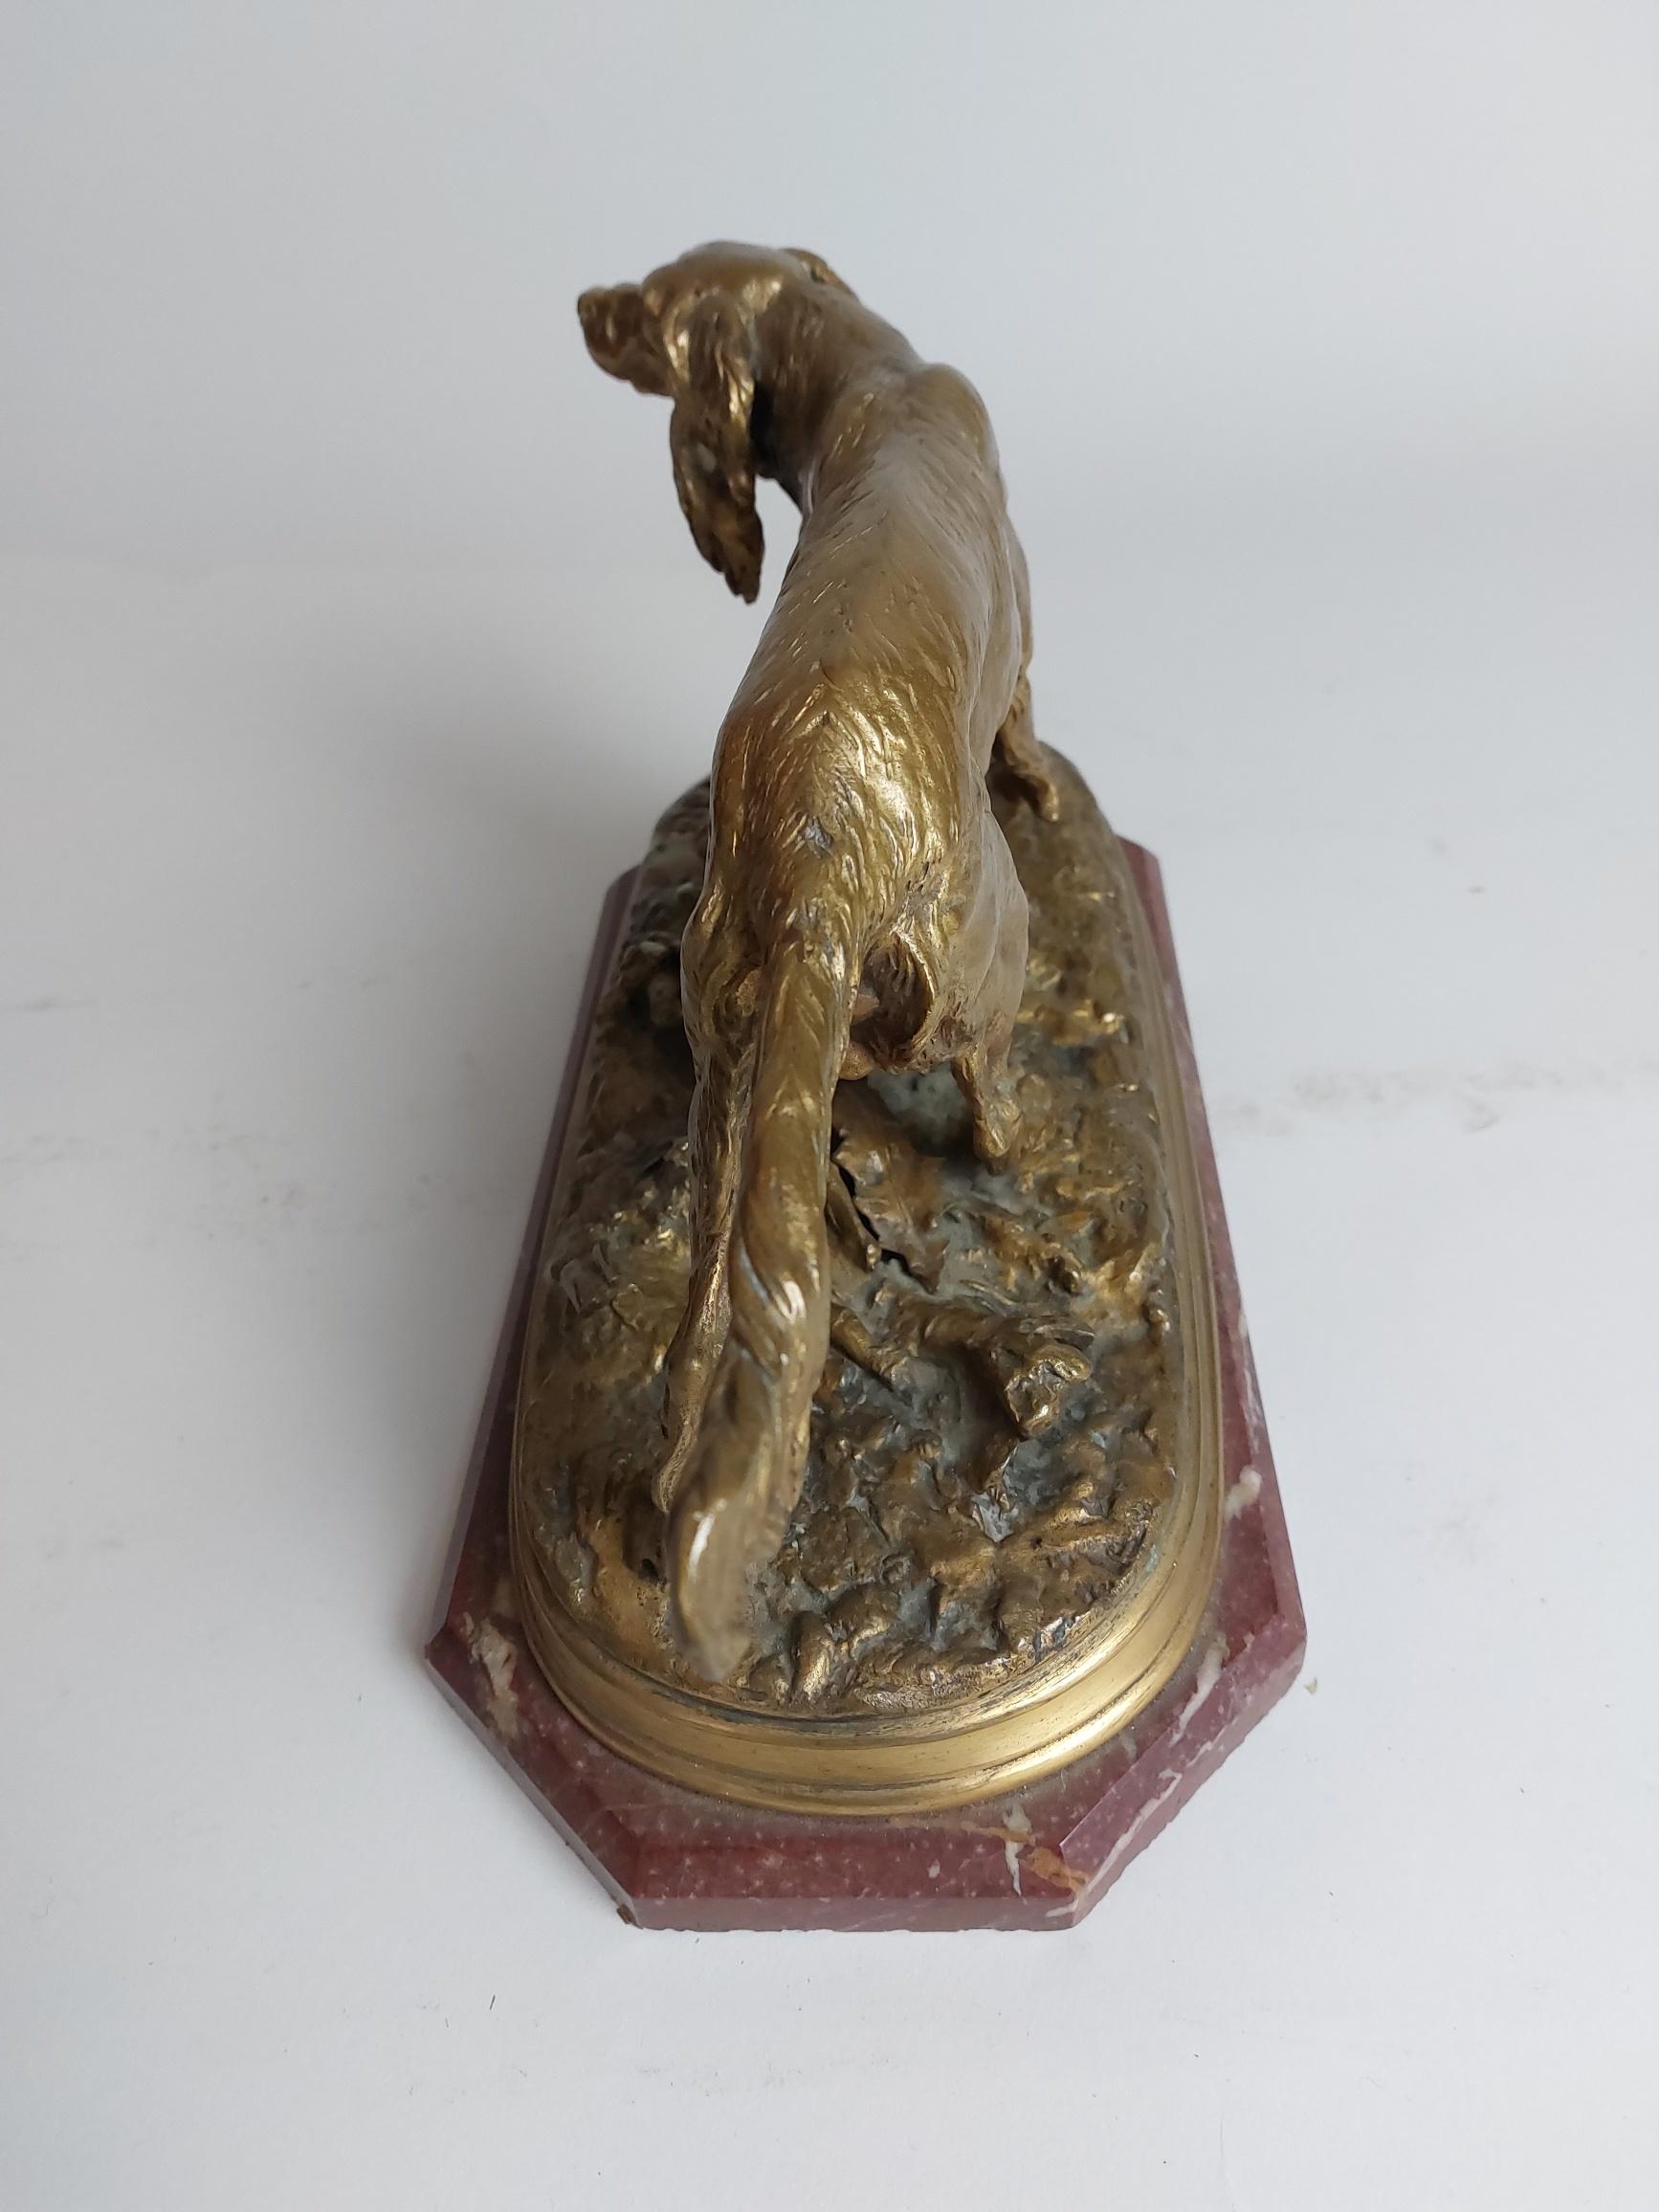 Bronze français du 19e siècle représentant un chien de type épagneul. Signé P J Mene

Une étude de portrait magnifiquement modélisé d'un chien il regarde vers le haut de il regarde vers le haut keenly vers son maître.
Sur un socle en